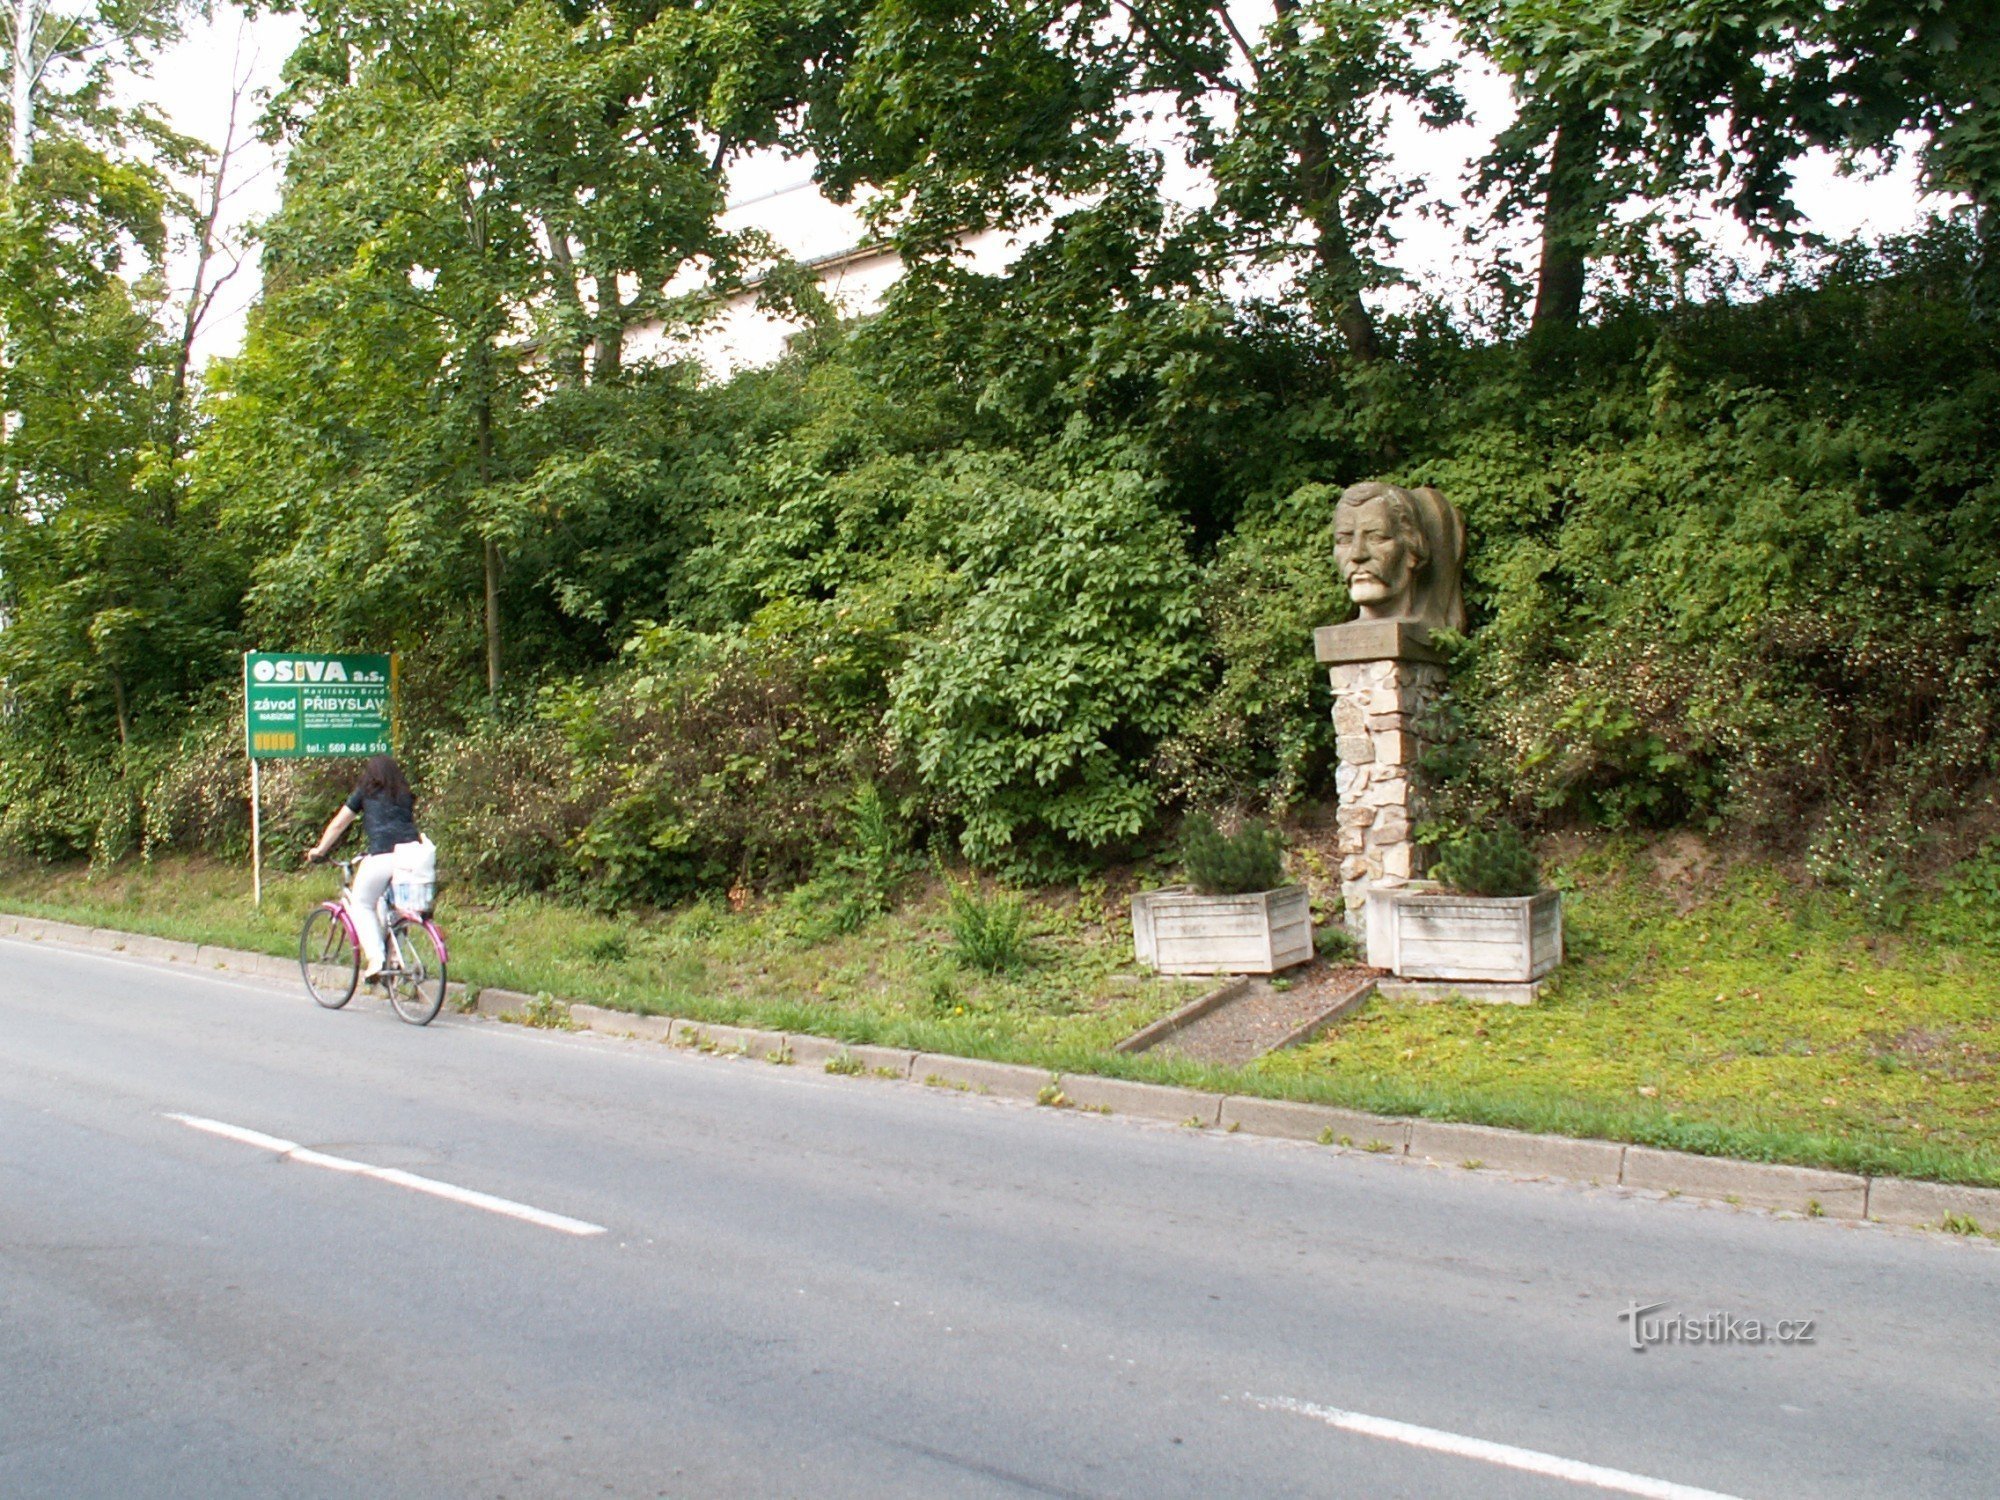 Busto de Karel Havlíček Borovský junto a la carretera